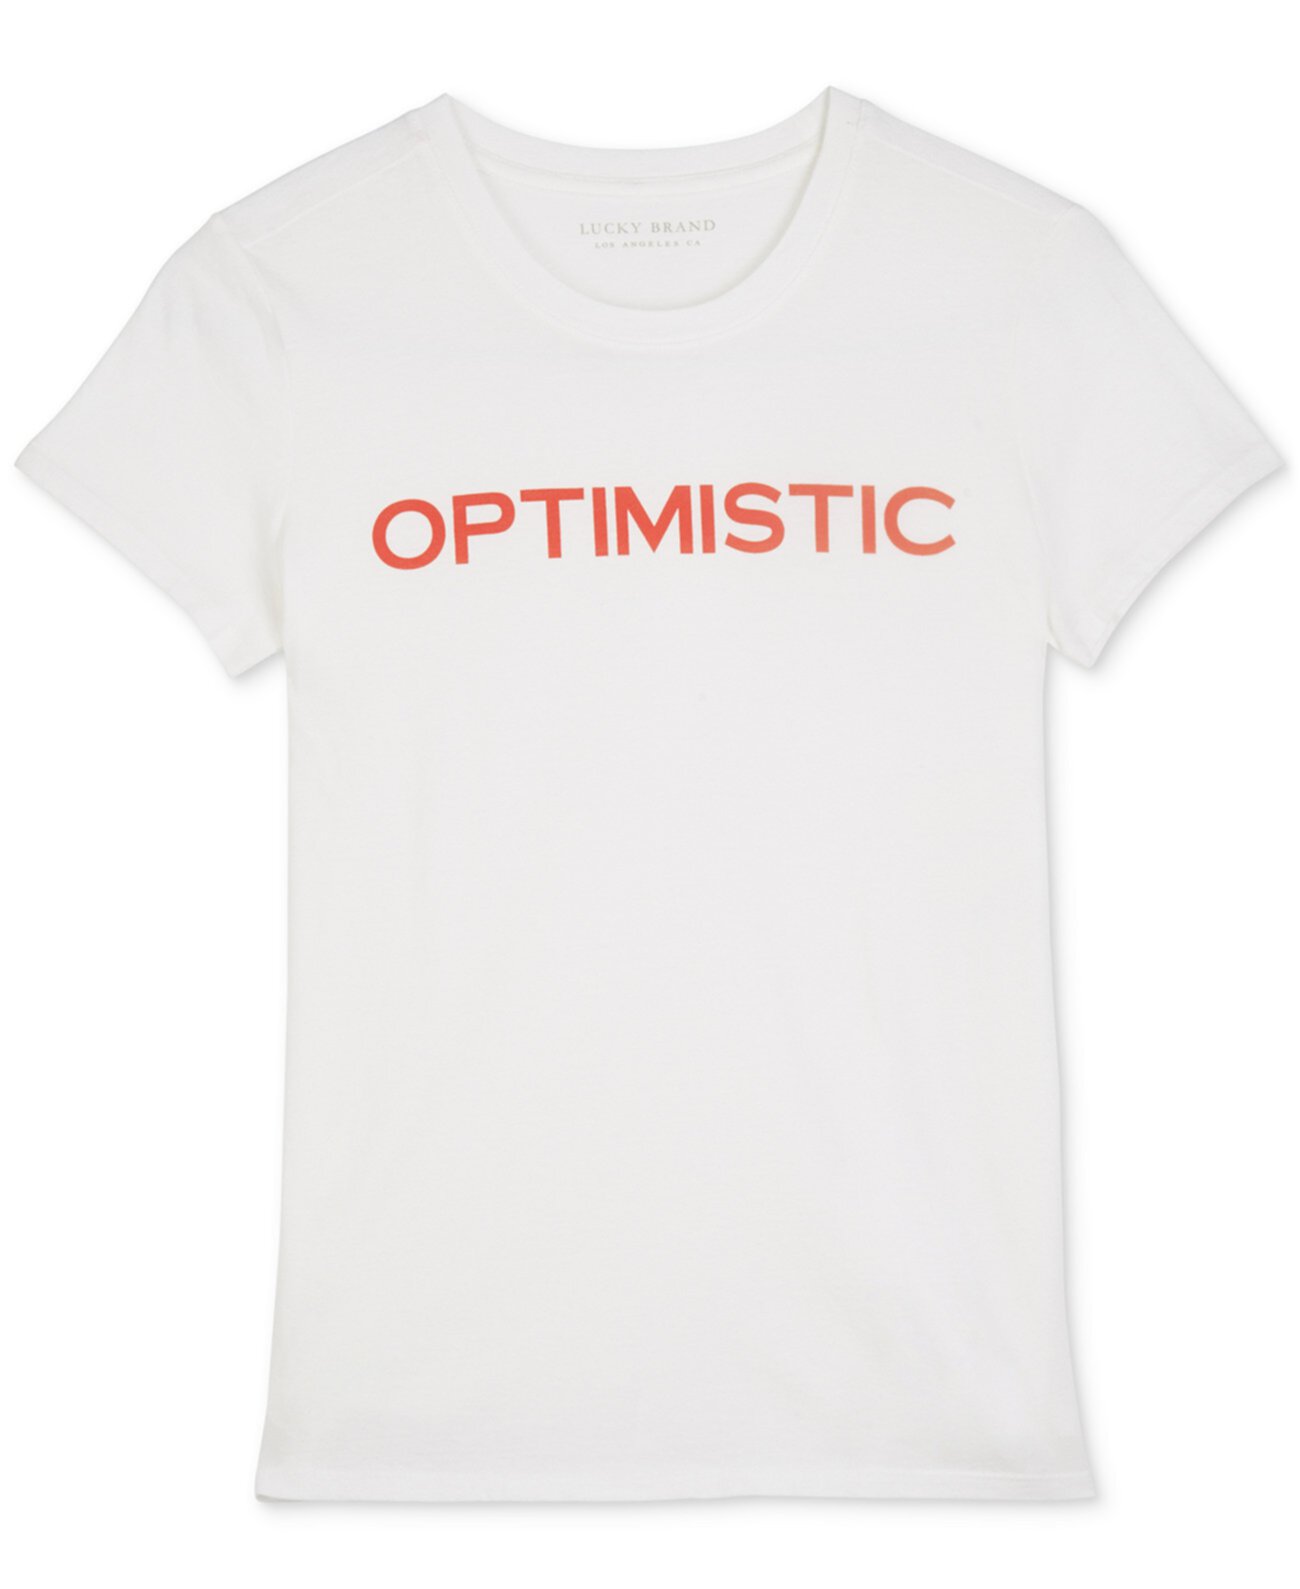 Хлопковая футболка с оптимистичным рисунком Lucky Brand